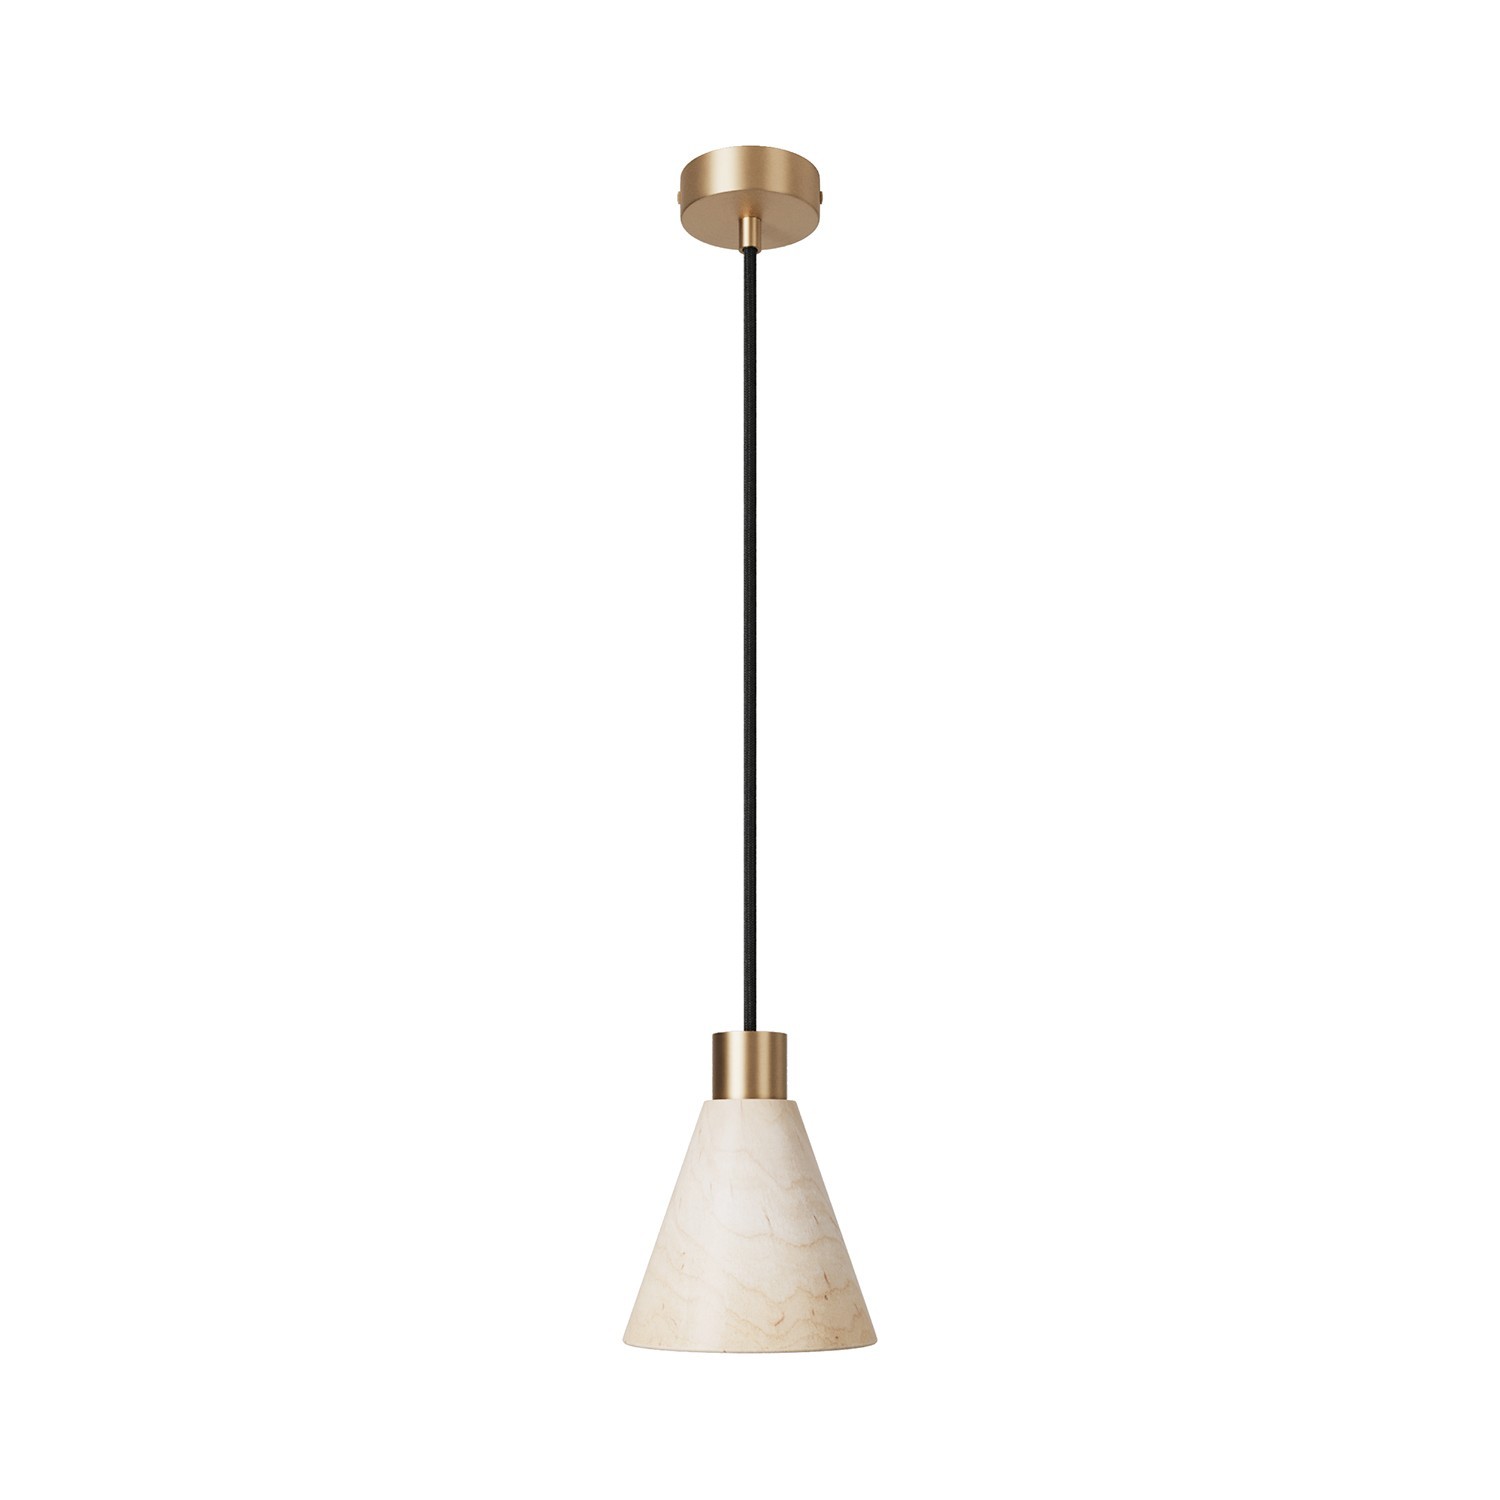 Hanglamp met kegelvormige houten lampenkap